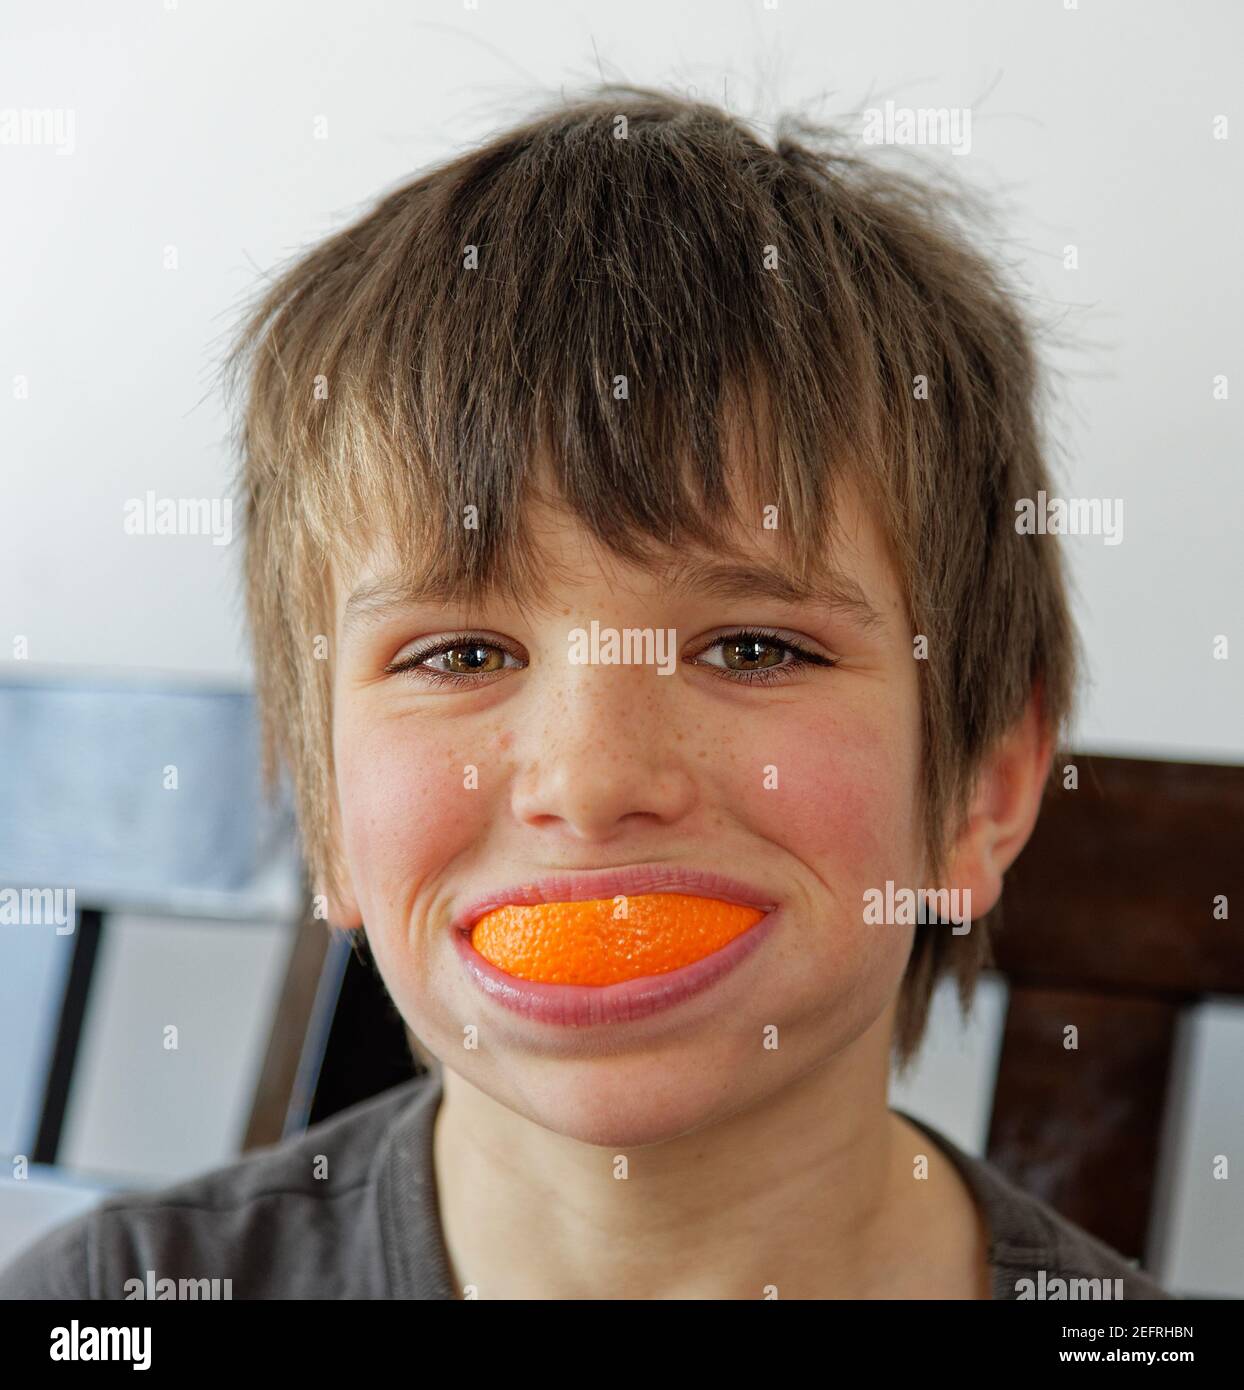 Ein kleiner Junge (8 Jahre) Mit einem Lächeln auf der Orangenschale Stockfoto